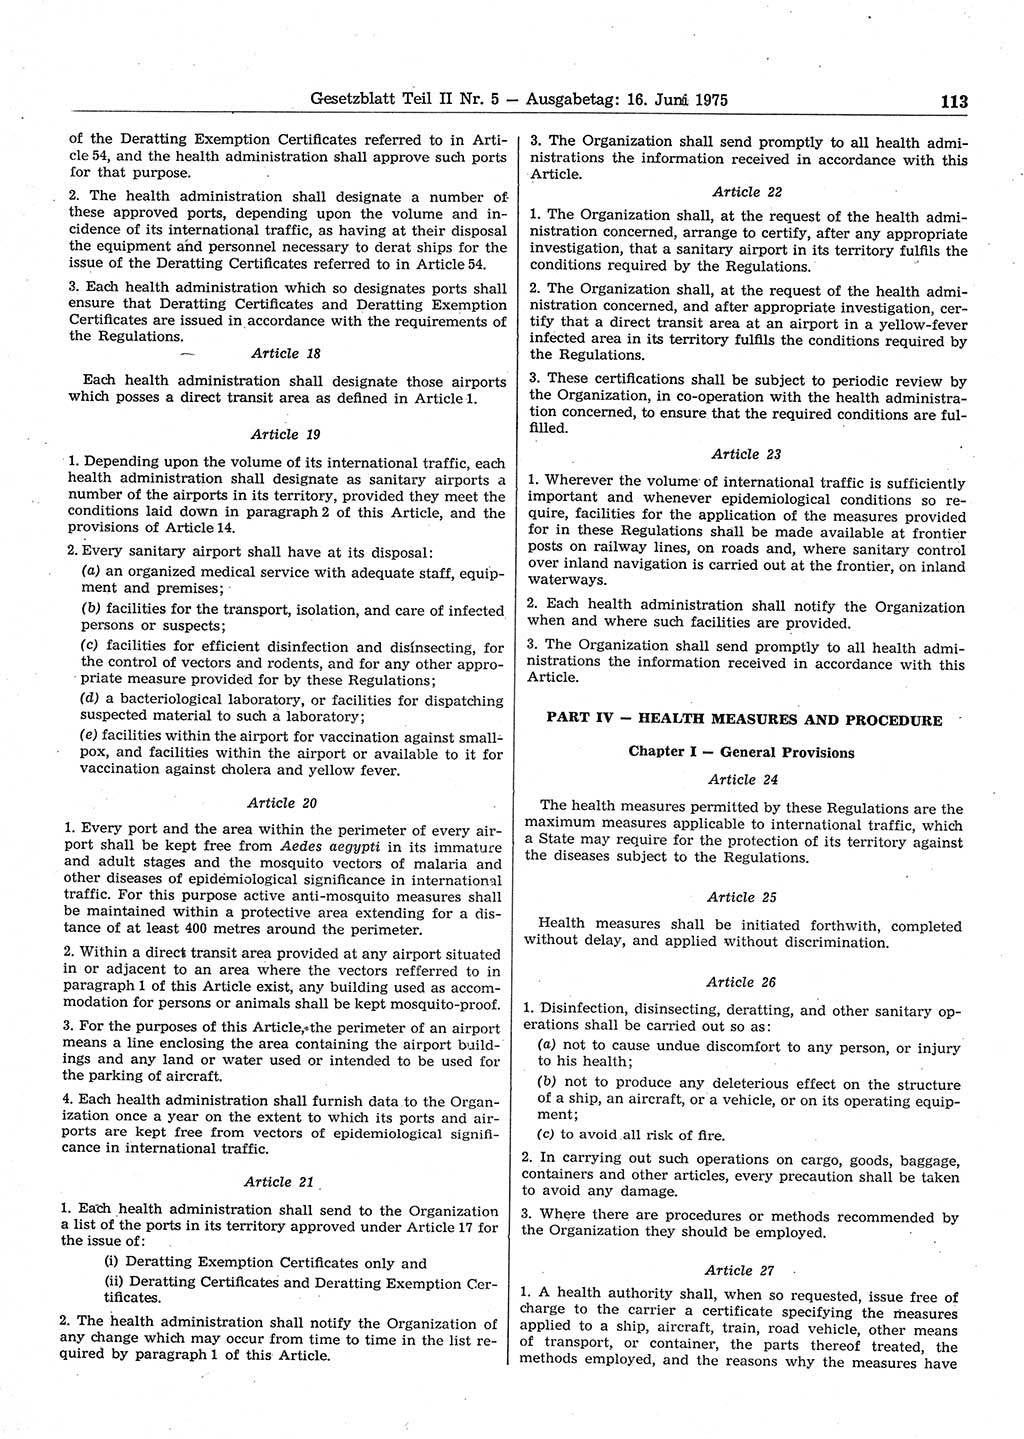 Gesetzblatt (GBl.) der Deutschen Demokratischen Republik (DDR) Teil ⅠⅠ 1975, Seite 113 (GBl. DDR ⅠⅠ 1975, S. 113)